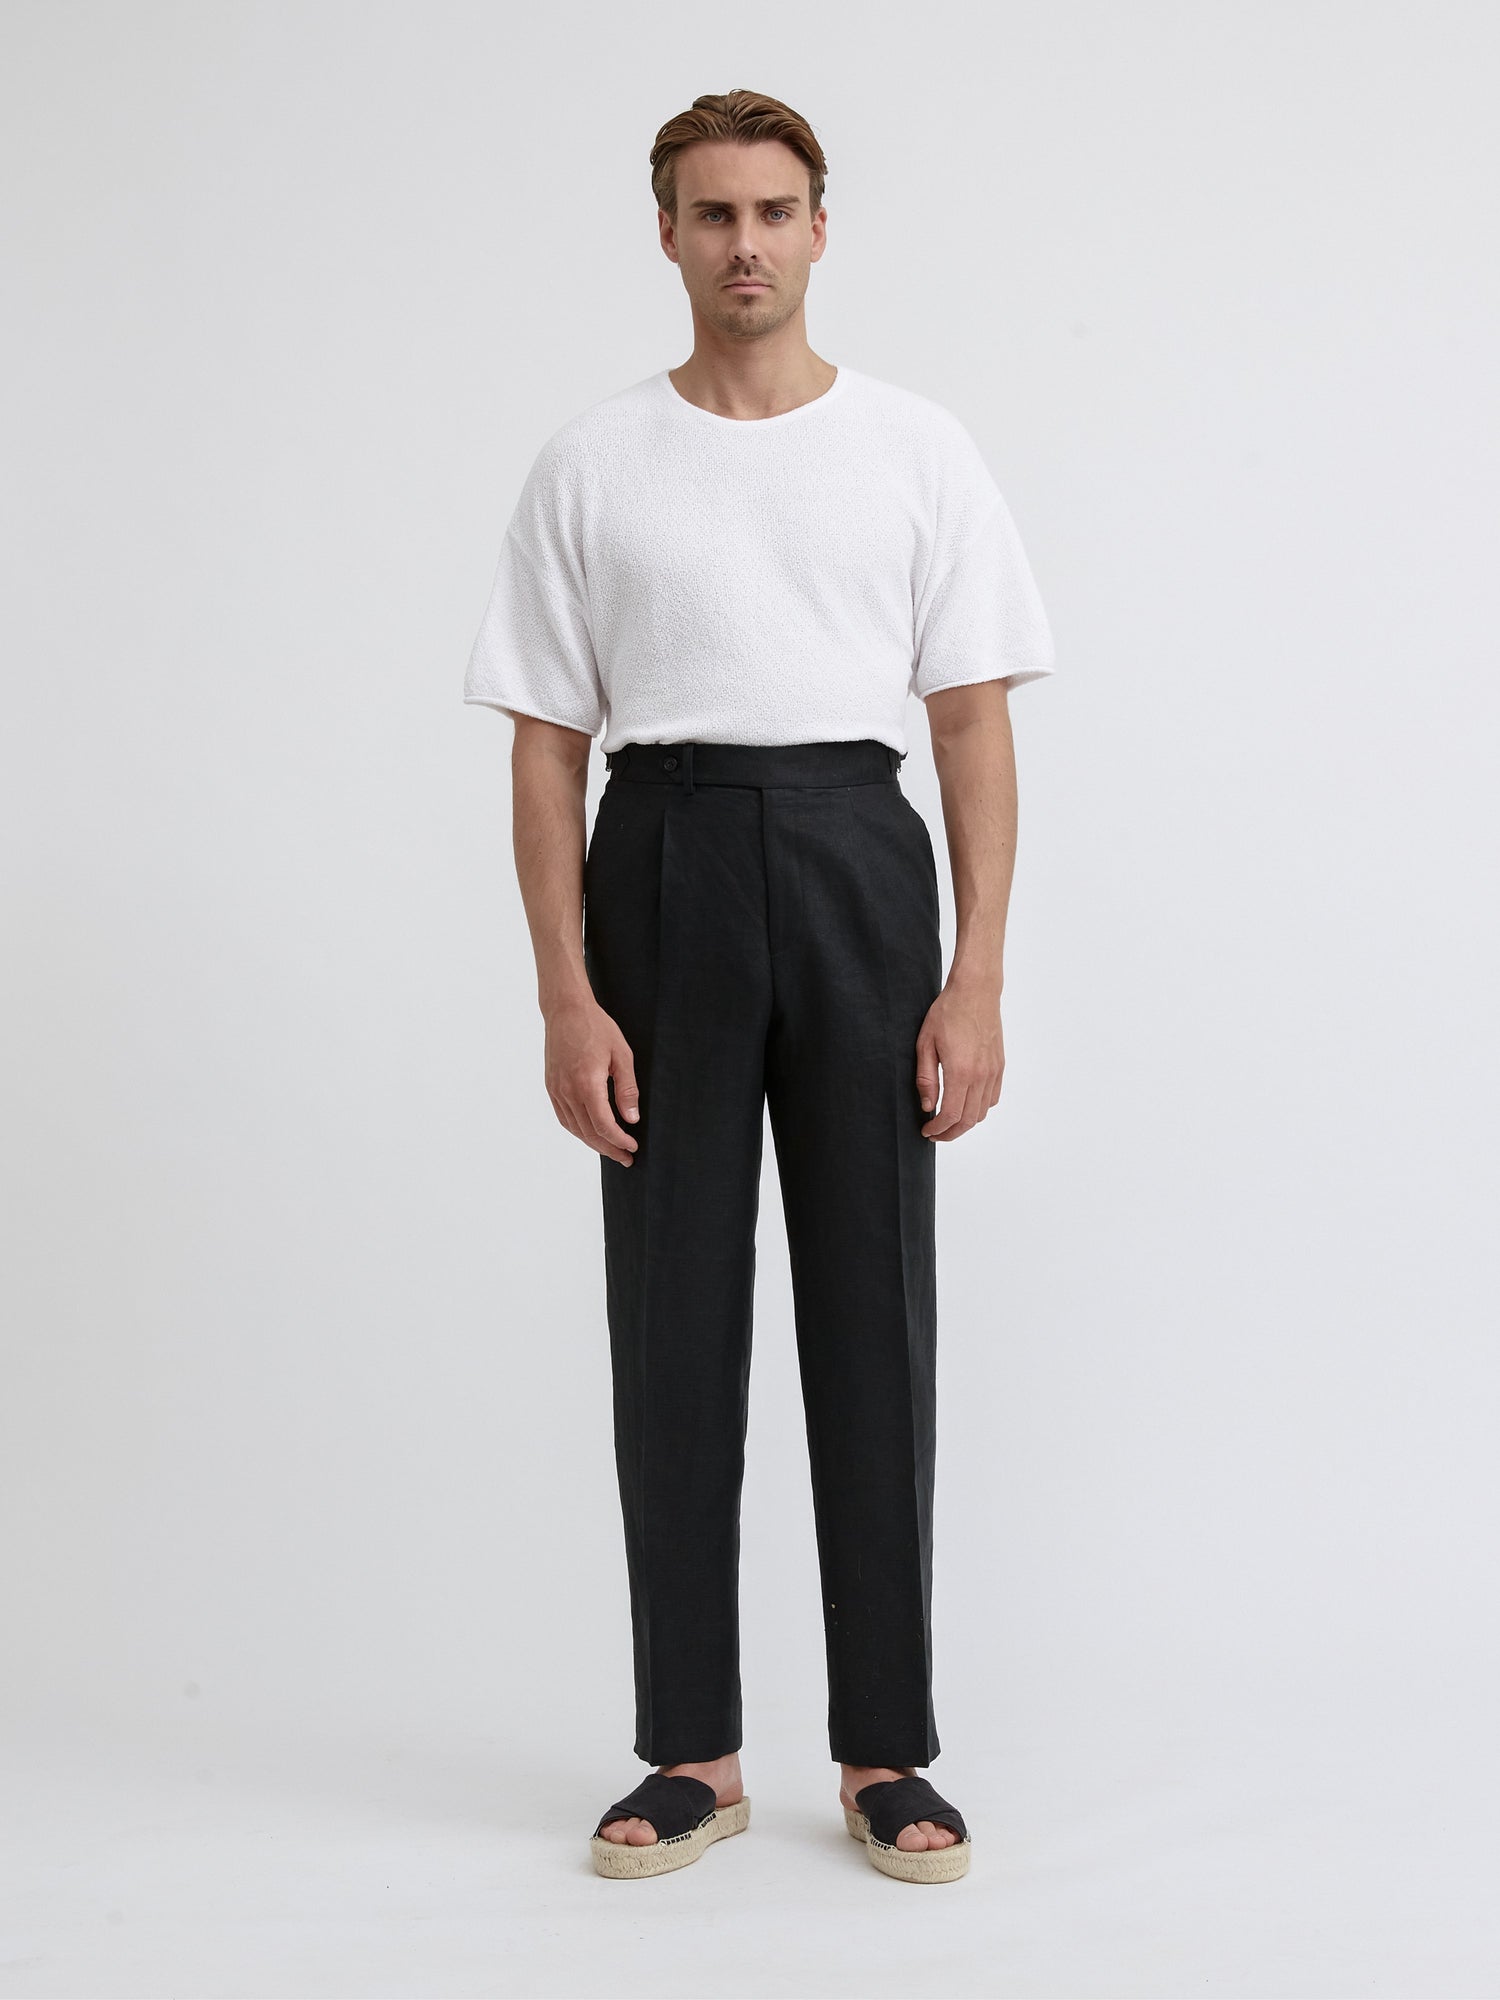 Black Linen Oscar Trousers (Wide Fit) - Grand Le Mar